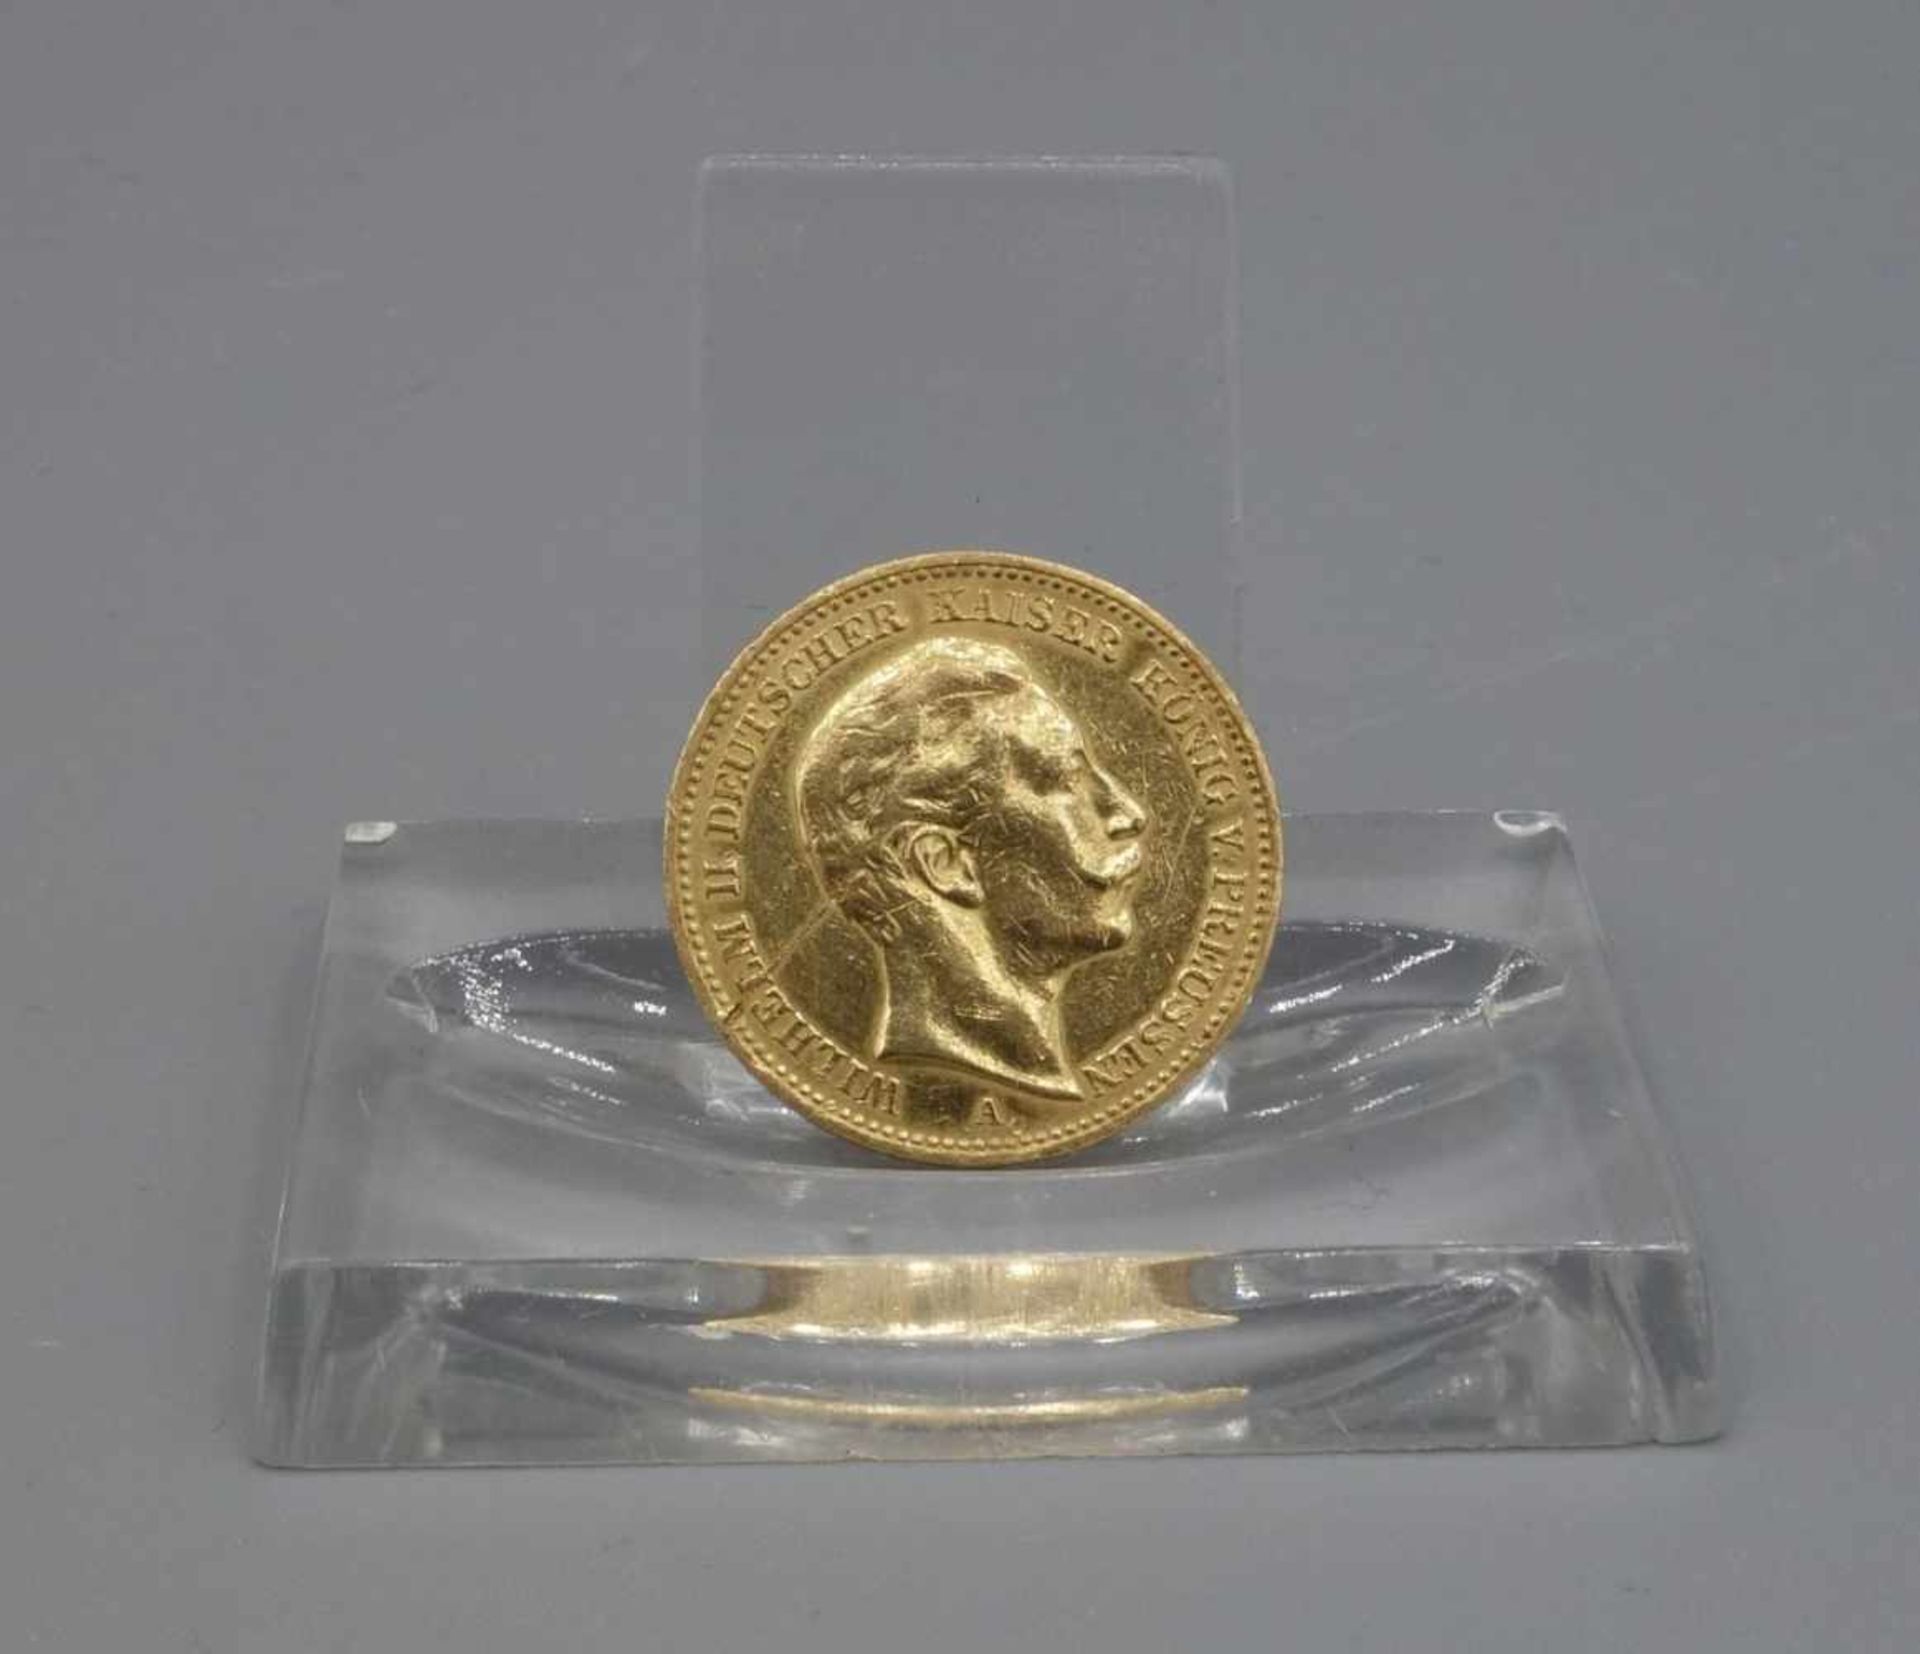 REICHSGOLDMÜNZE KAISER WILHELMS II. / coin, 7,5 g. Umlaufgoldmünze des deutschen Kaiserreichs.